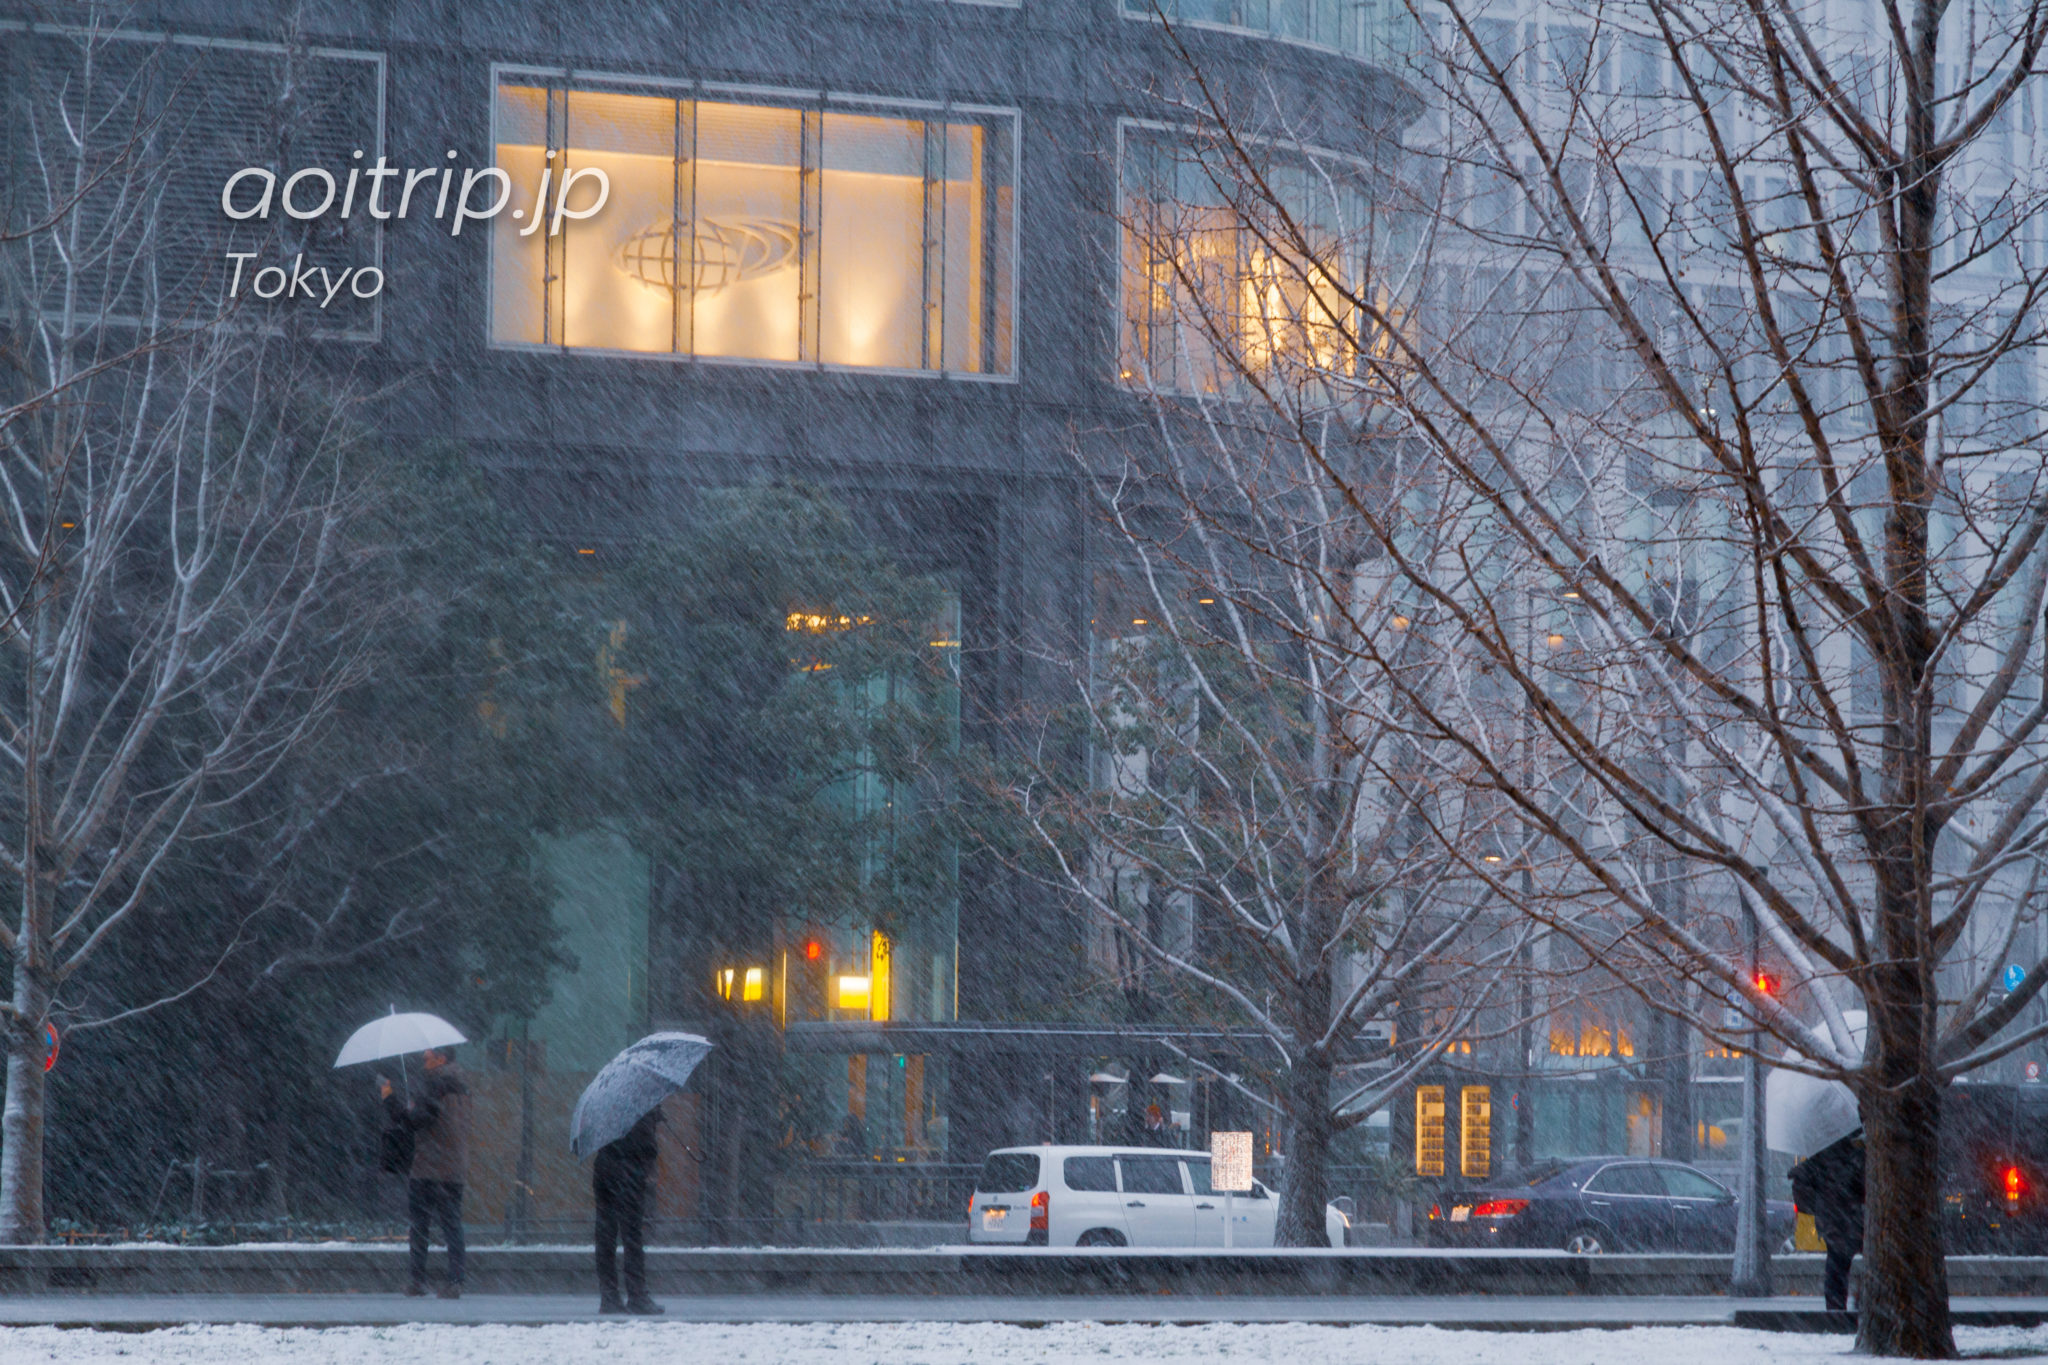 雪の降る東京駅の写真